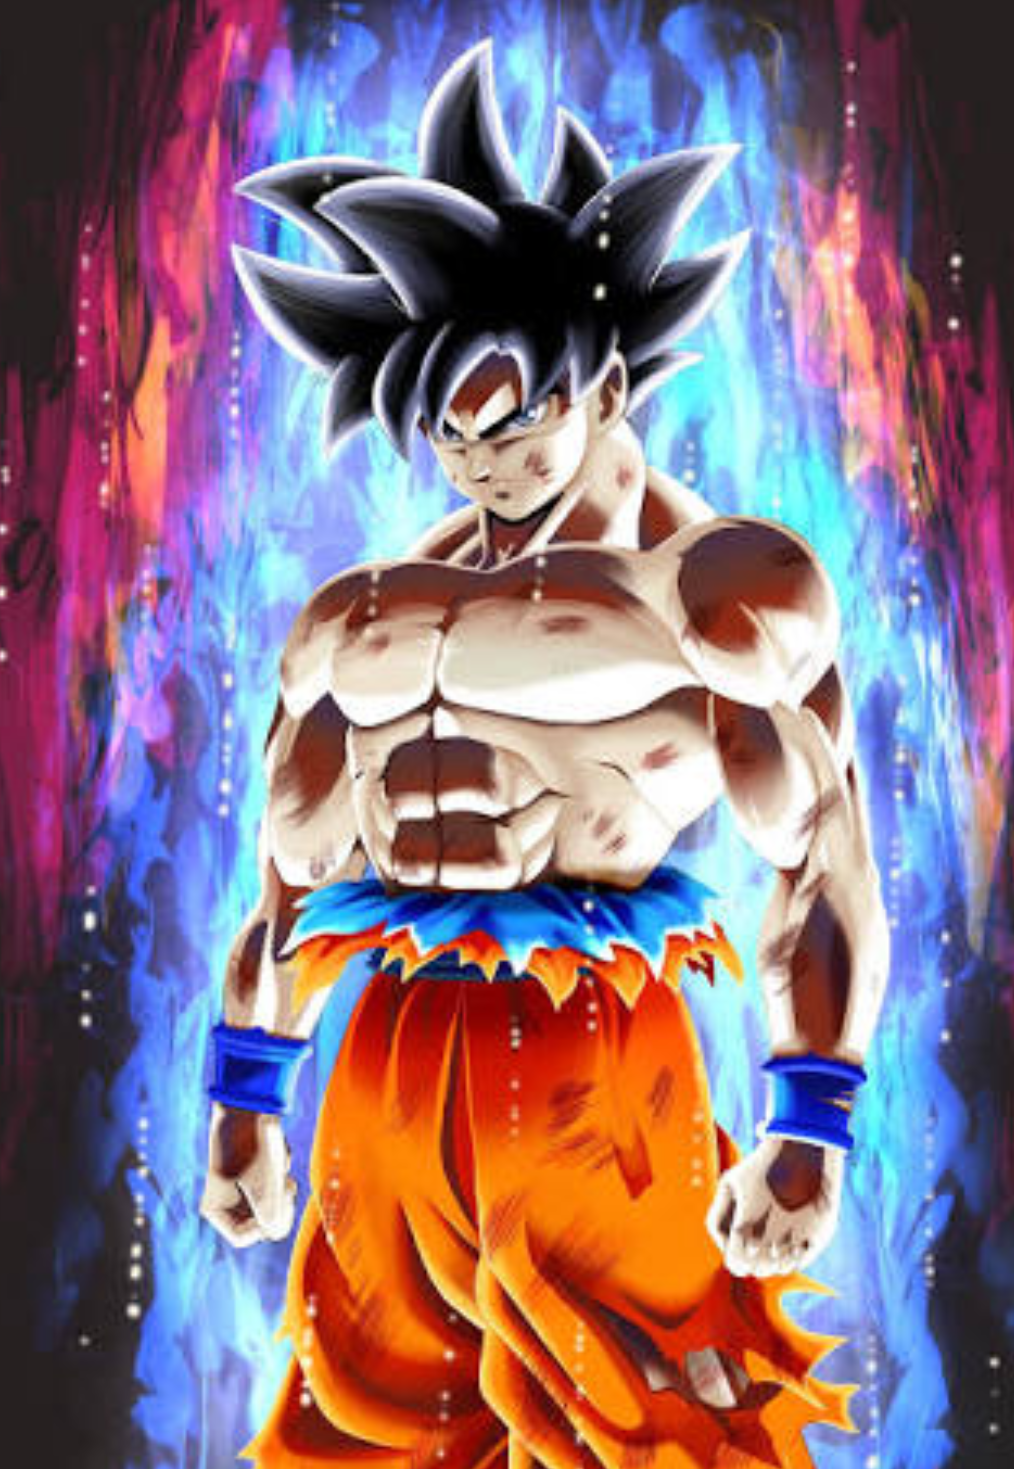 Drip Goku wallpaper by Kkeagan05 - Download on ZEDGE™